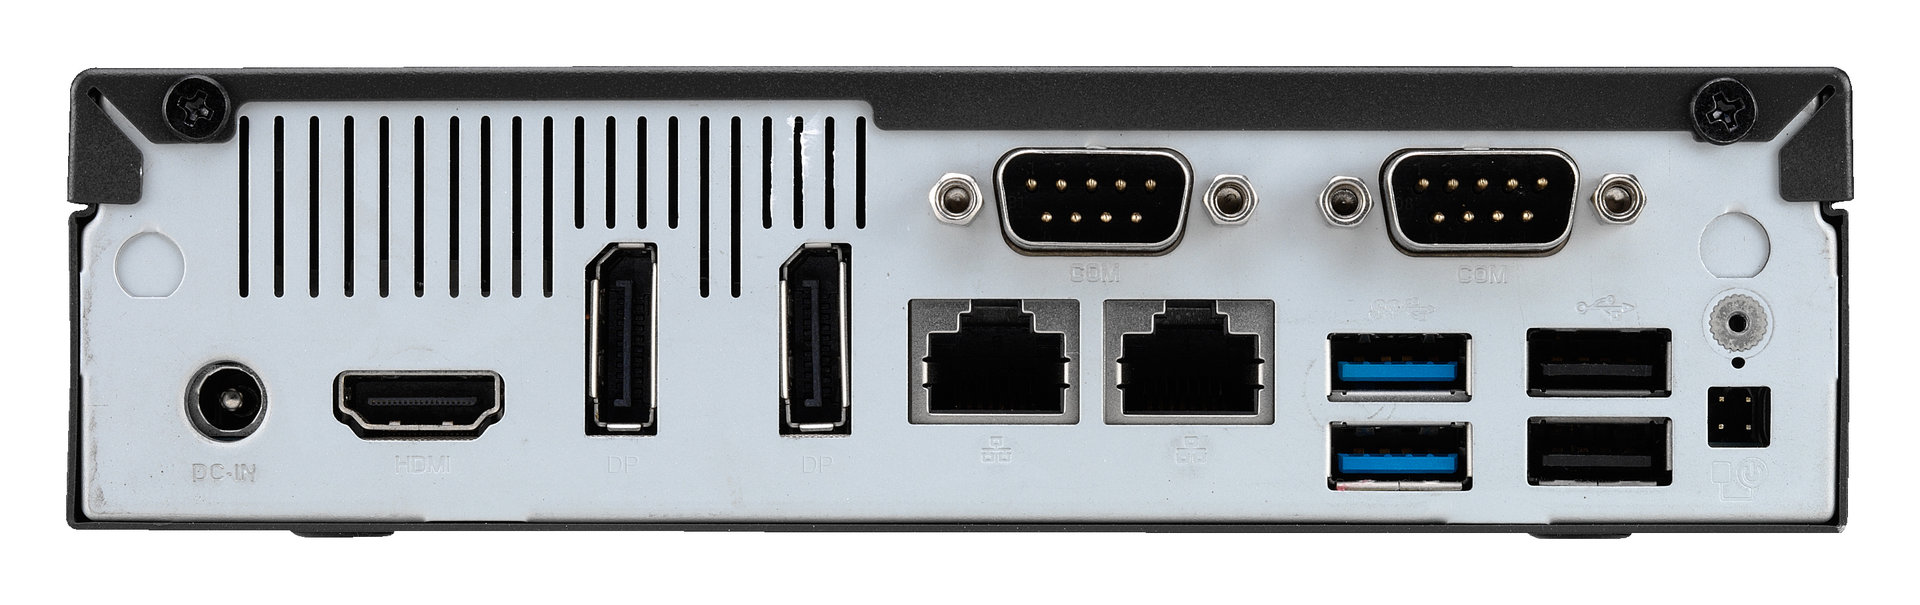 Mehr USB-3.0-Buchsen und zwei Displayports für die Ausgabe von 4K-Inhalten im XPC slim-Barebone